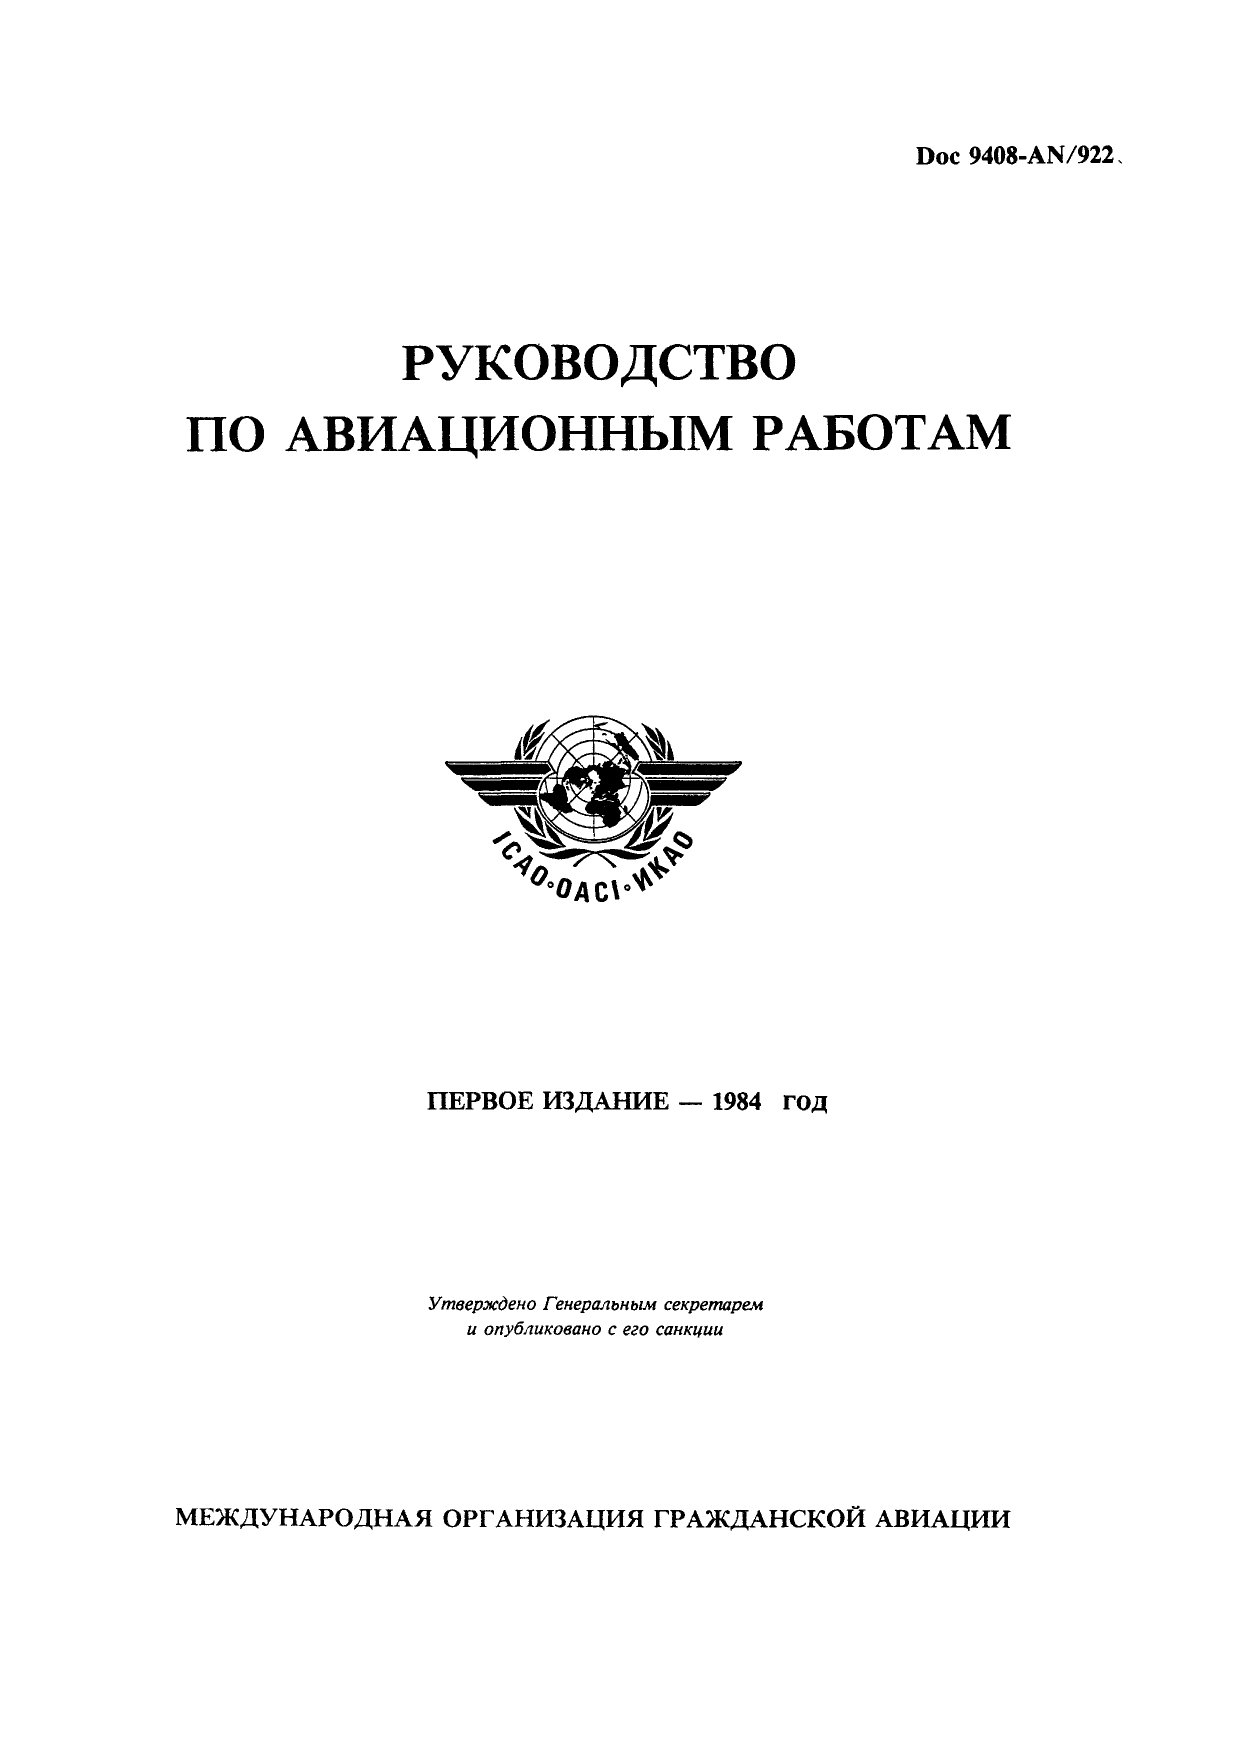 Обложка книги ICAO Doc 9408 Руководство по авиационным работам (ИКАО)